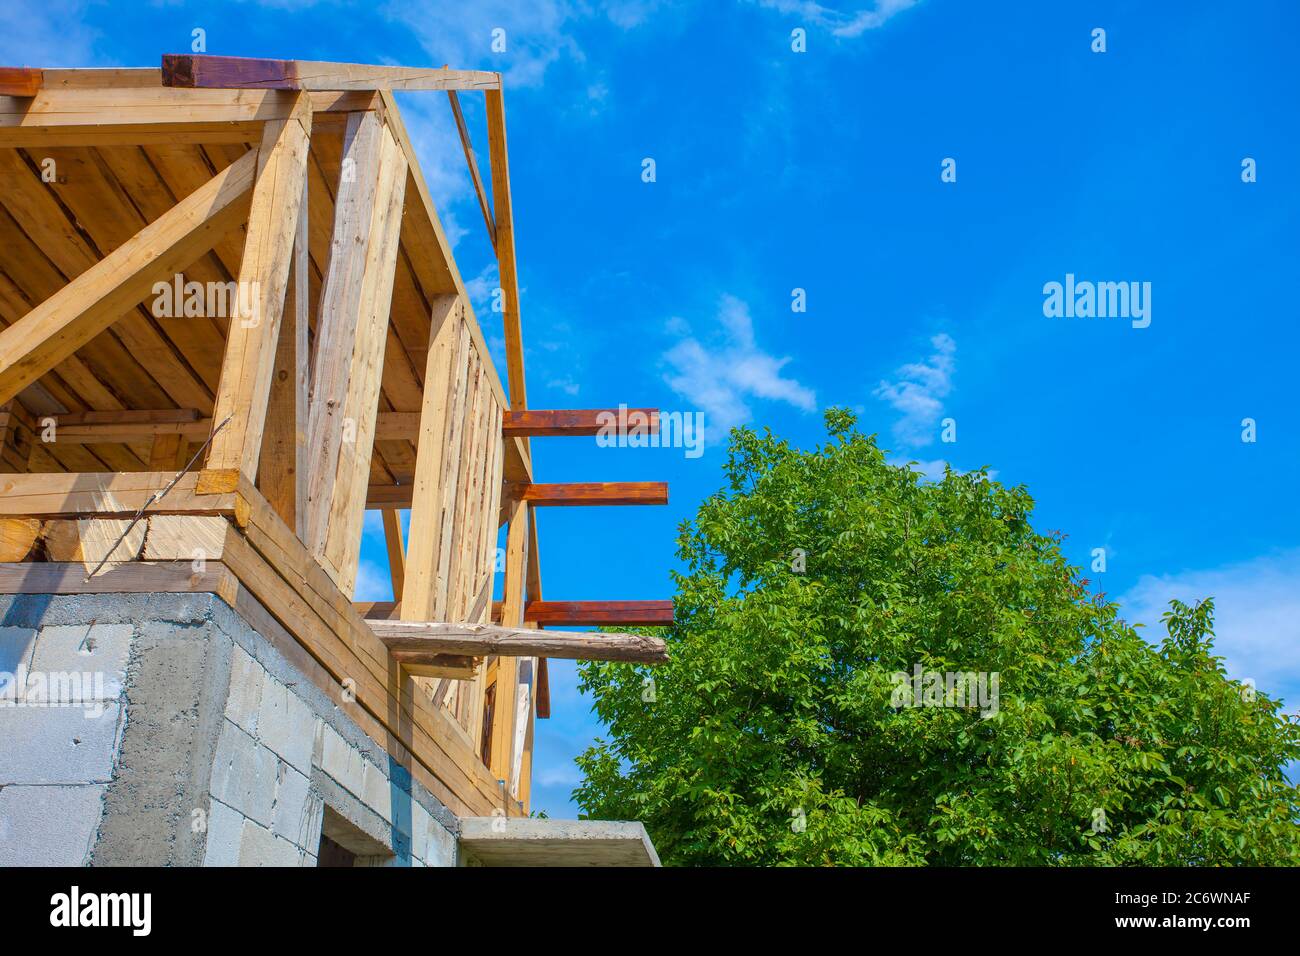 nouvelle maison en bois avec arbre et ciel bleu. photo industrielle de construction Banque D'Images